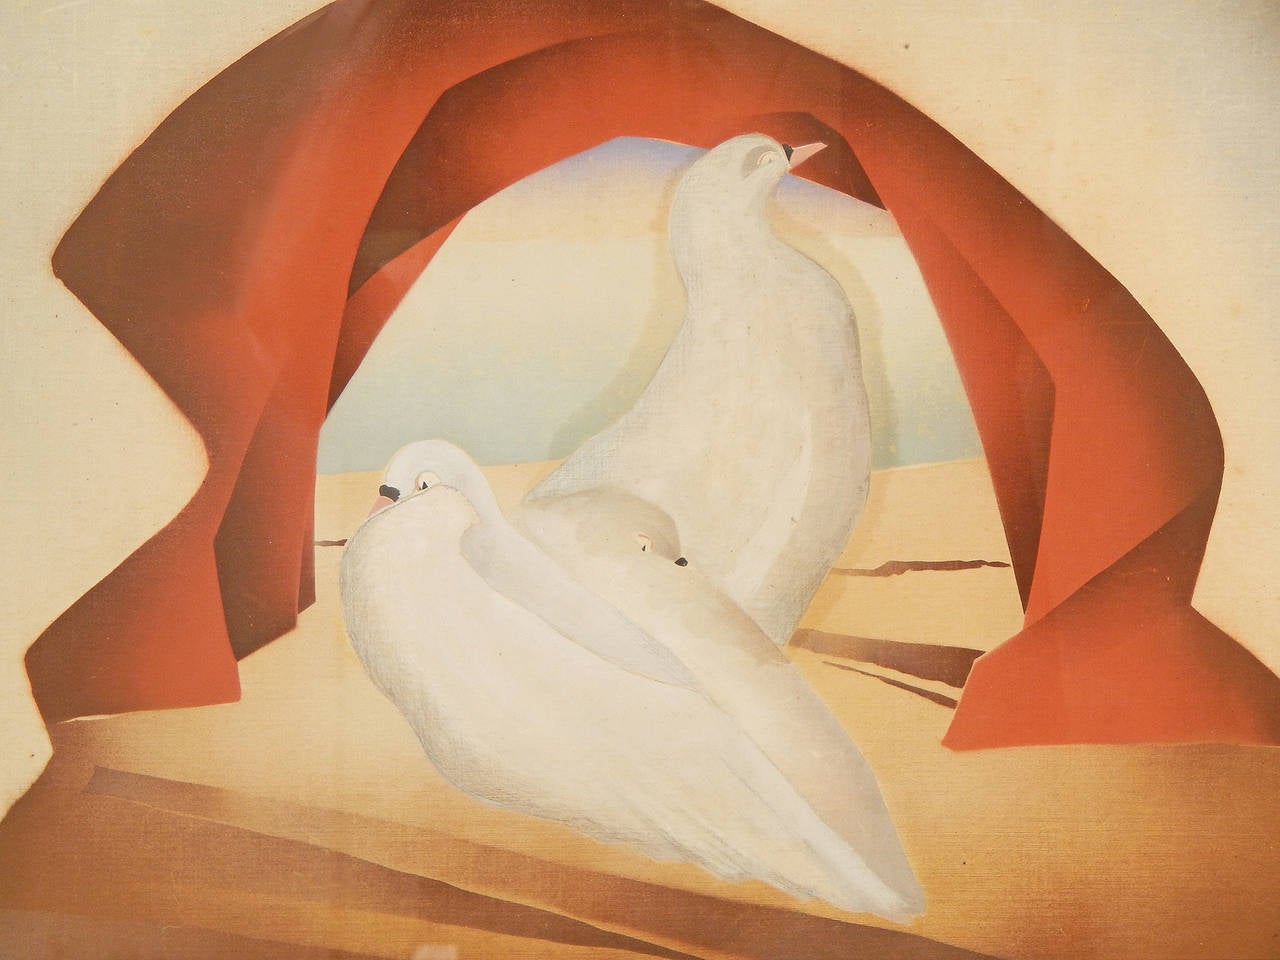 Merveilleux exemple de peinture Art déco de William Hentschel, cette pièce reflète également l'influence du surréalisme dans l'arche stylisée qui semble être faite de tissu, et la plate-forme pour les colombes, qui ressemble à un affleurement